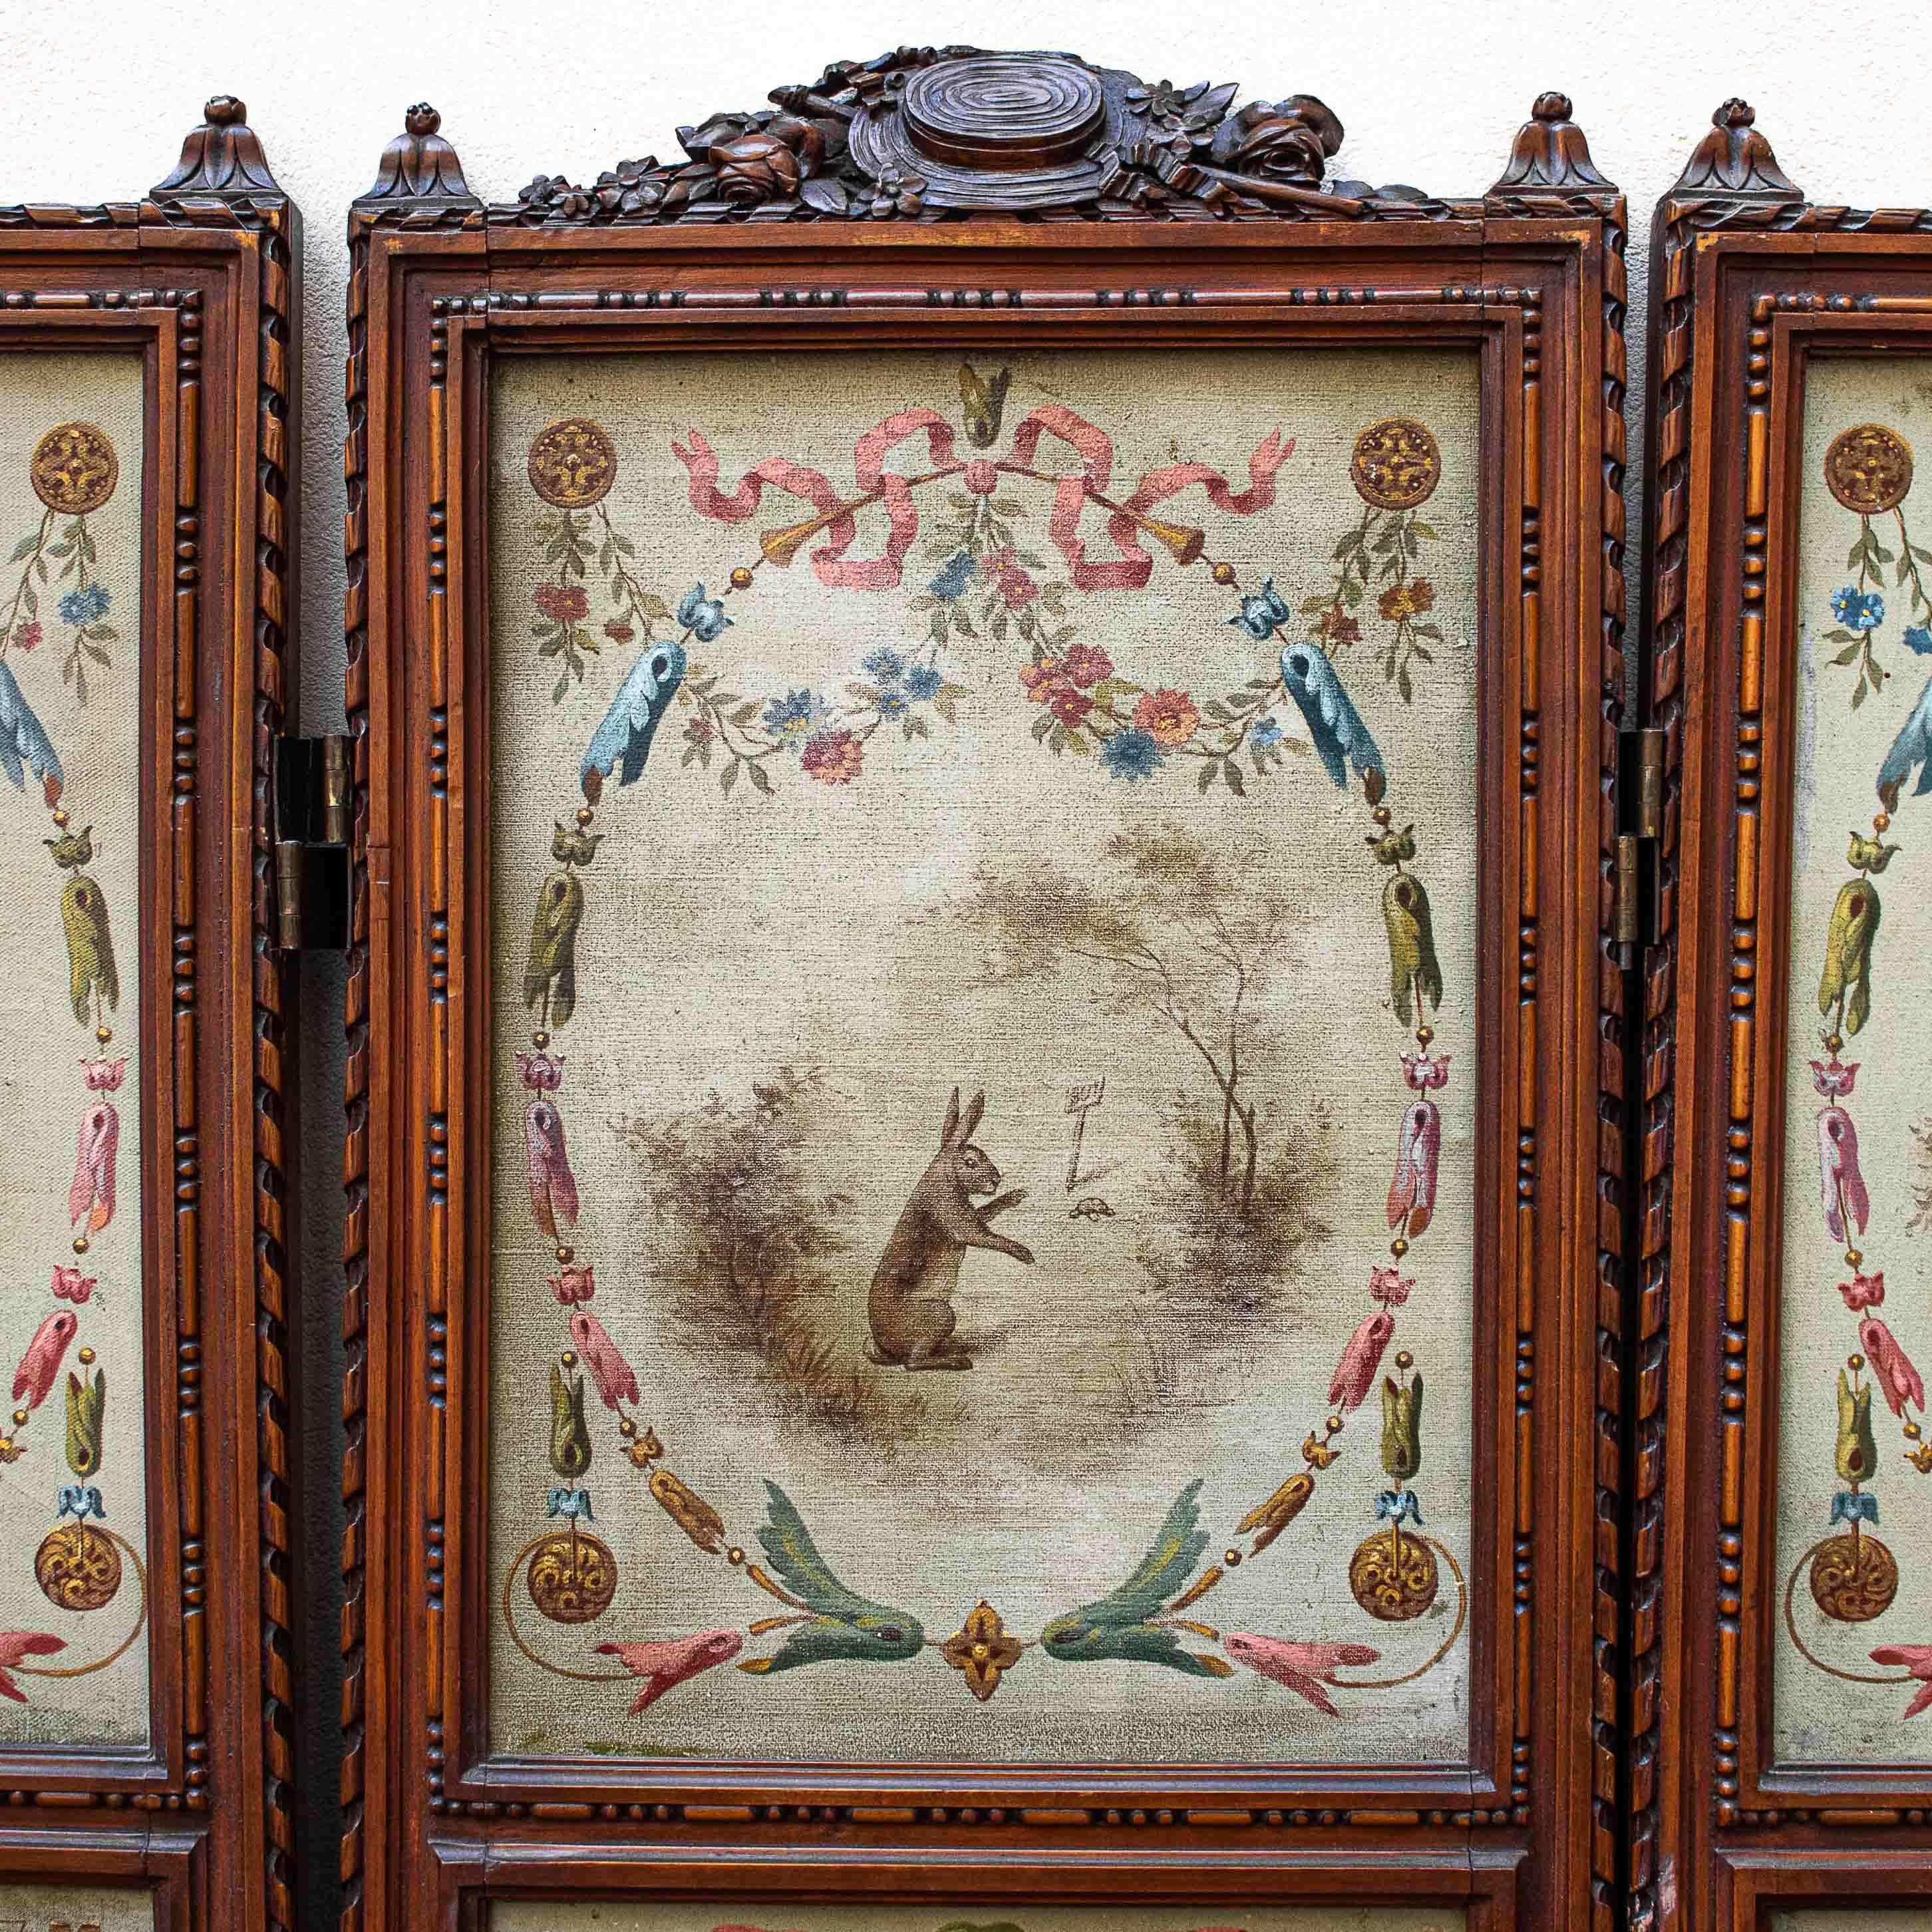 Dix-neuvième siècle
Écran avec grotesques
Mesures : (5) Huile sur toile, 158 x 185 cm

L'écran analysé est composé de cinq panneaux, chacun divisé en deux panneaux décorés d'éléments du monde naturel au niveau supérieur et de décorations